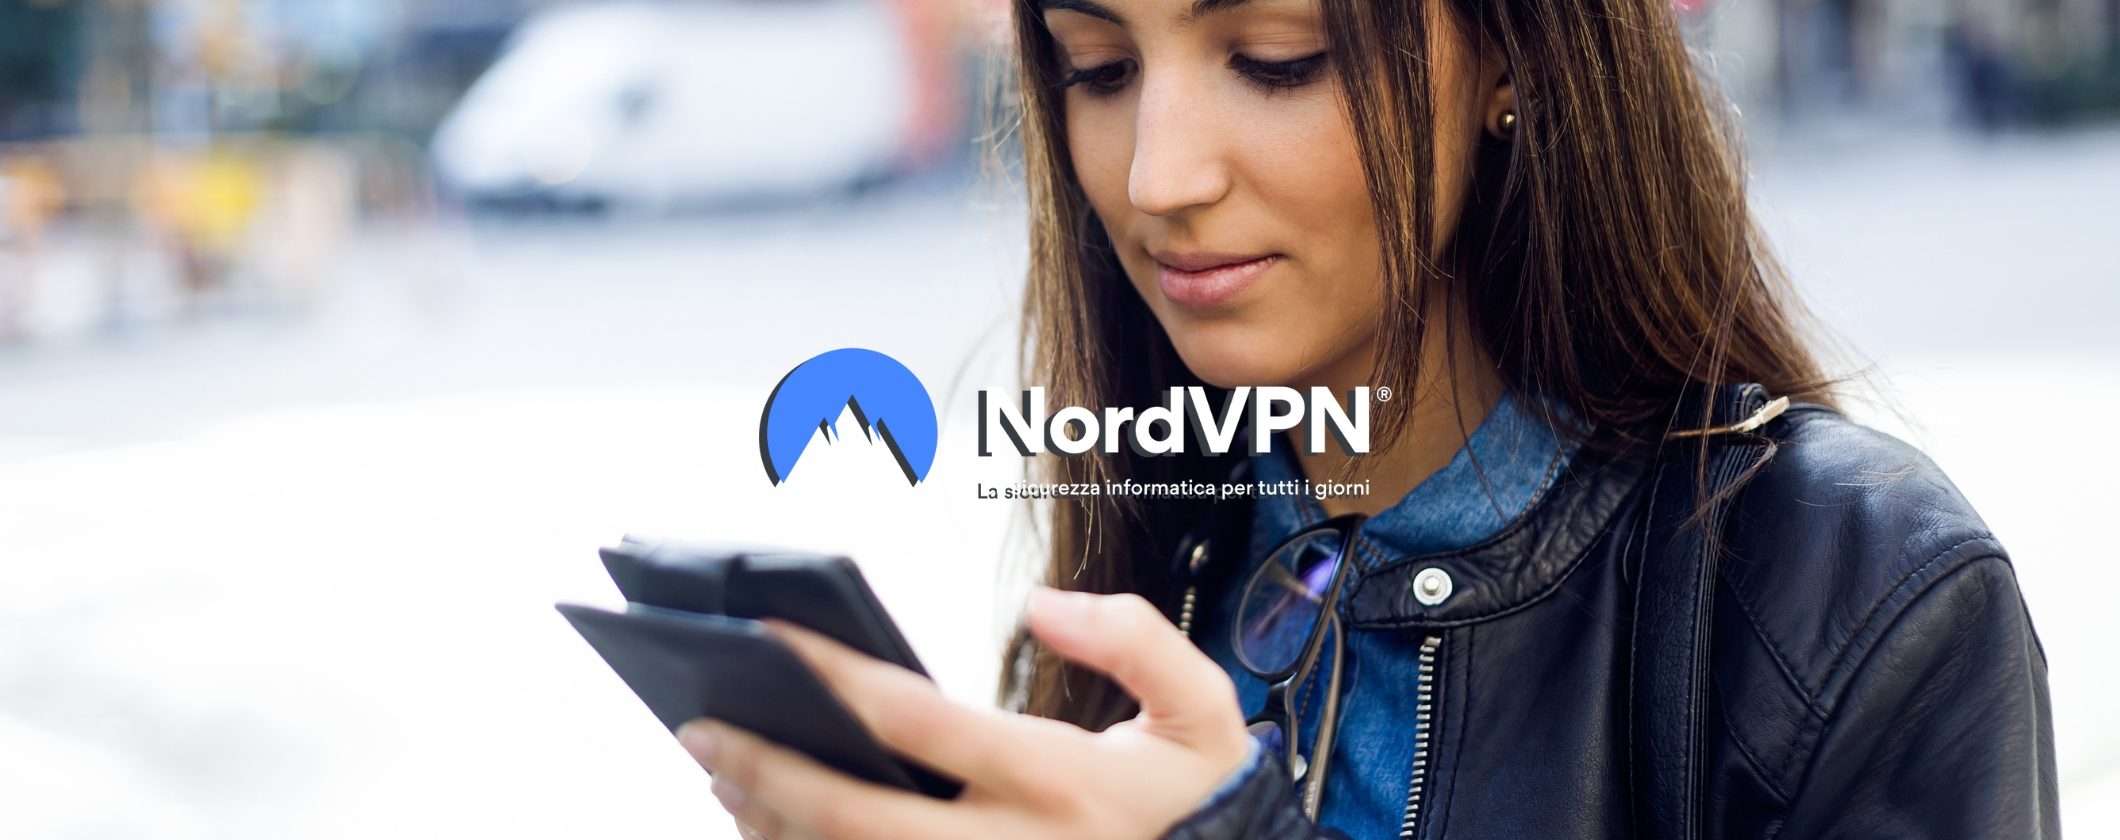 NordVPN è la scelta azzeccata per privacy e sicurezza